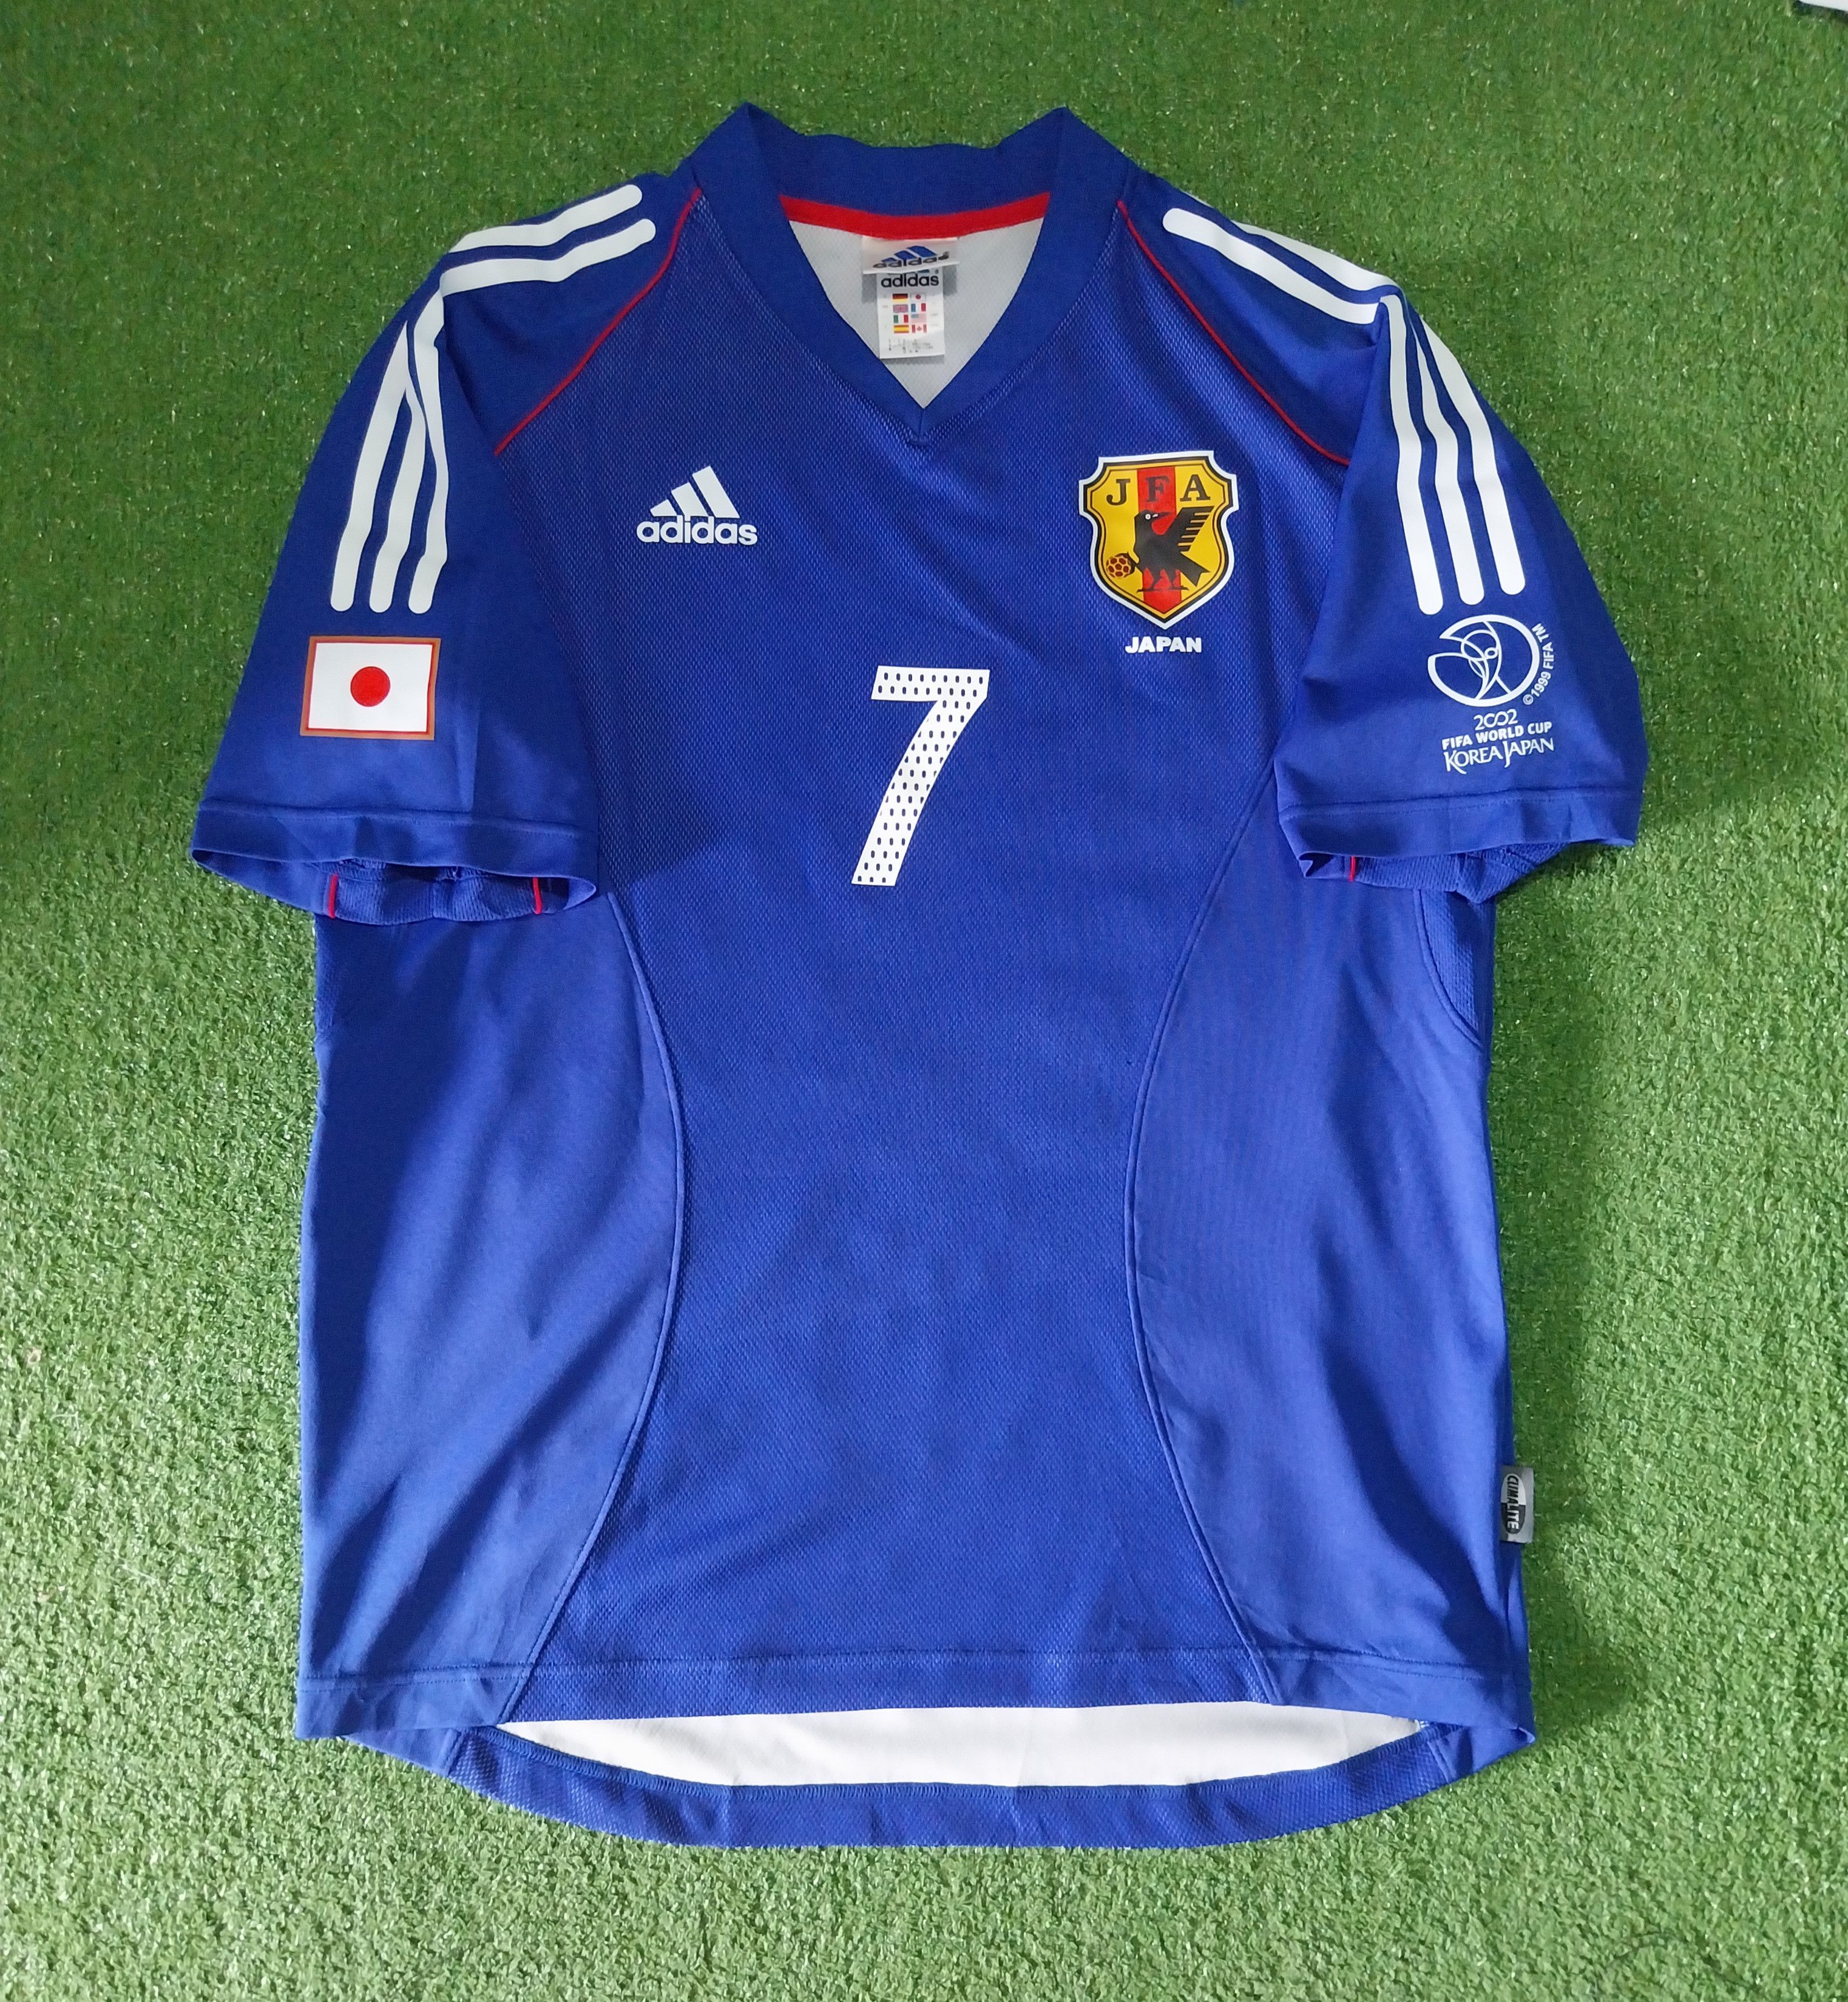 Adidas Japan world cup 2002 nakata jersey football | Grailed